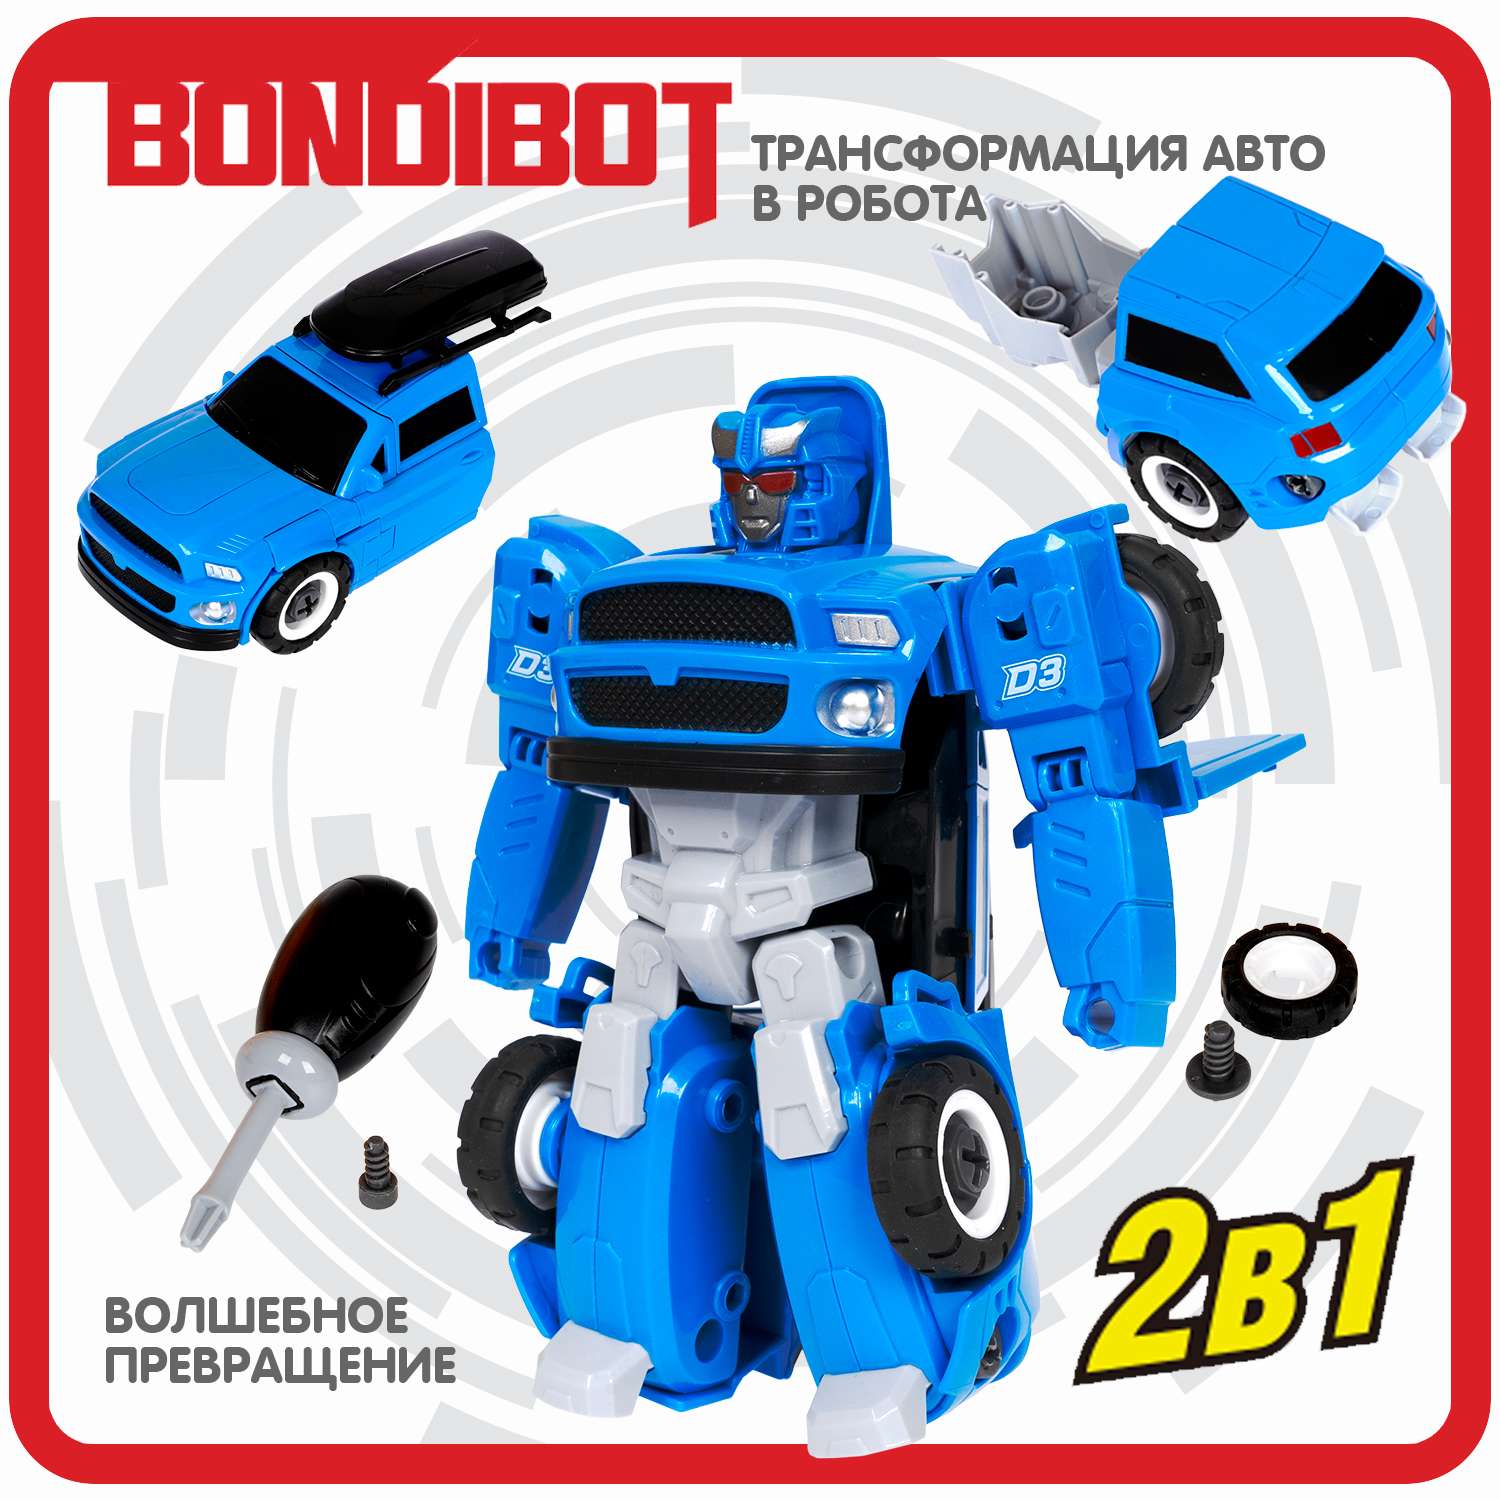 Трансформер BONDIBON Bondibot Робот-автомобиль с отвёрткой 2 в 1 джип синего цвета - фото 4